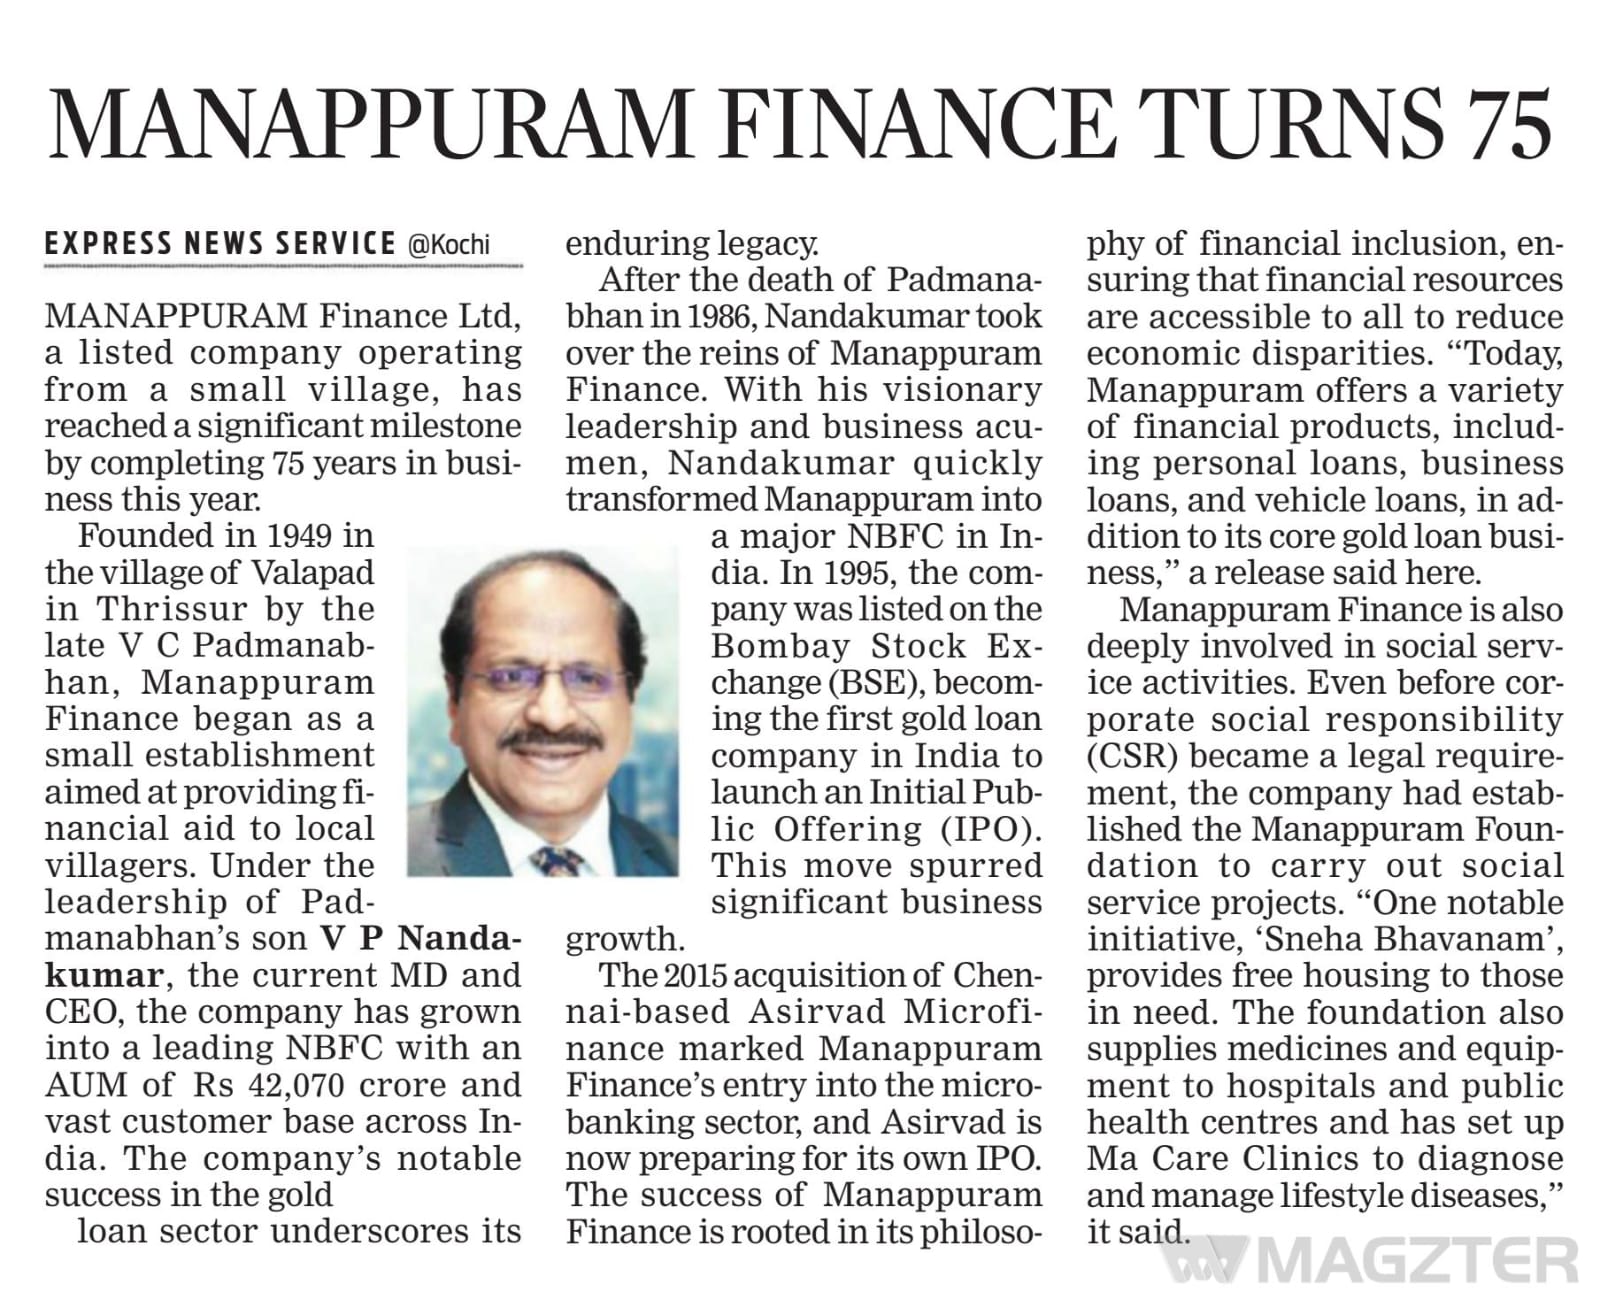 Manappuram Finance Turns 75